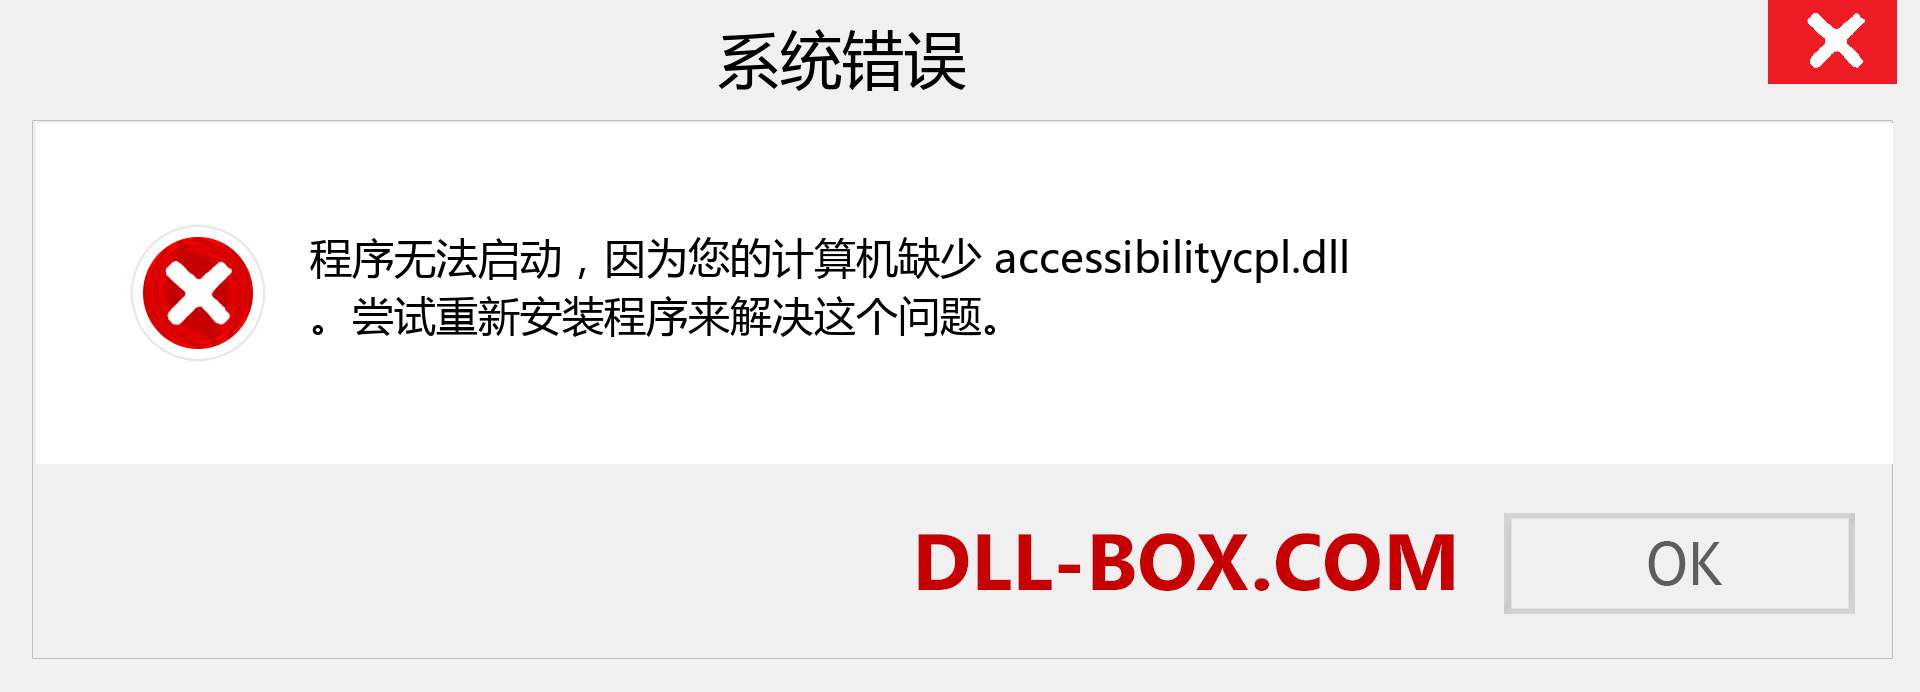 accessibilitycpl.dll 文件丢失？。 适用于 Windows 7、8、10 的下载 - 修复 Windows、照片、图像上的 accessibilitycpl dll 丢失错误